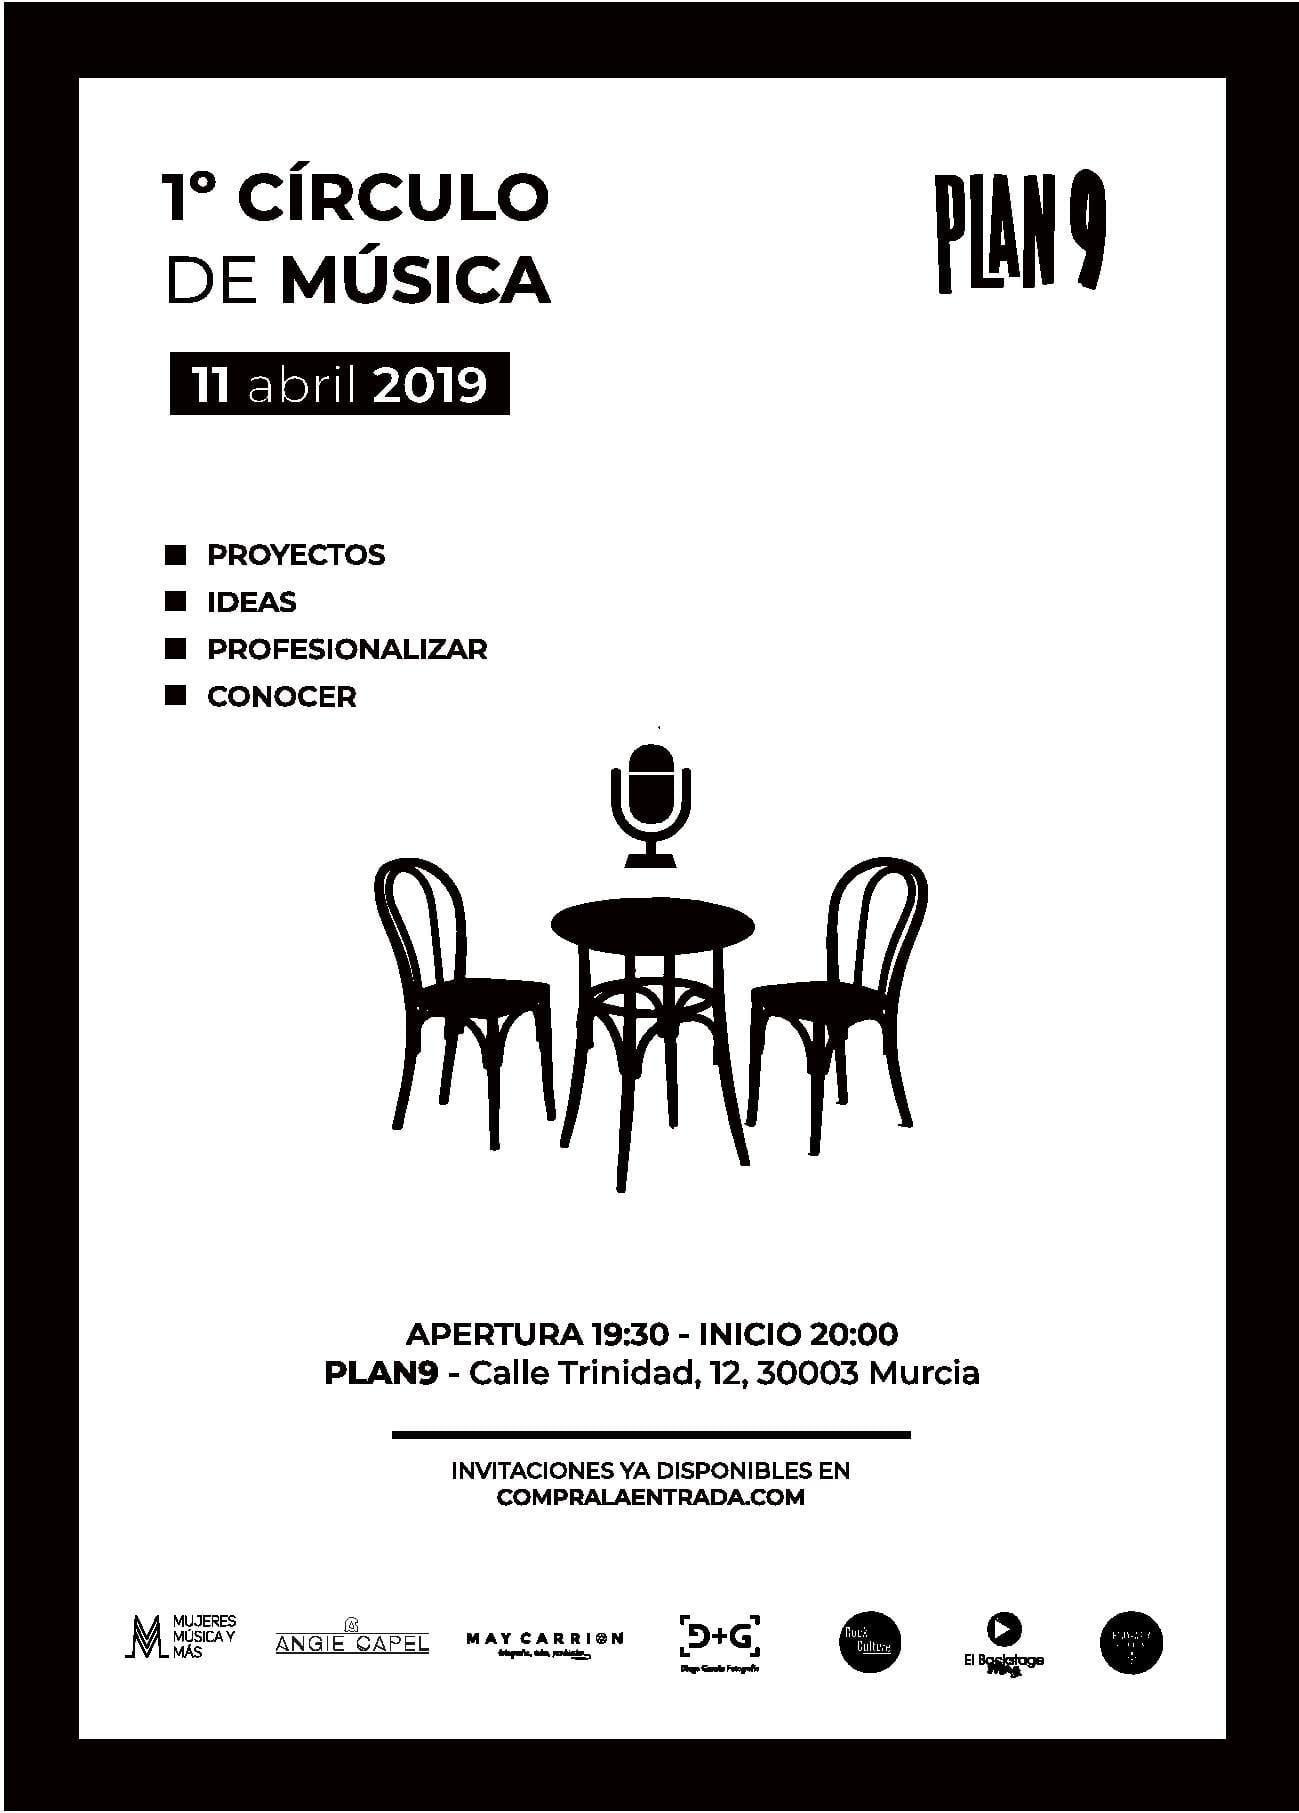 Llega la 1ª edición de Círculo de Música, el 11 de abril en Plan 9